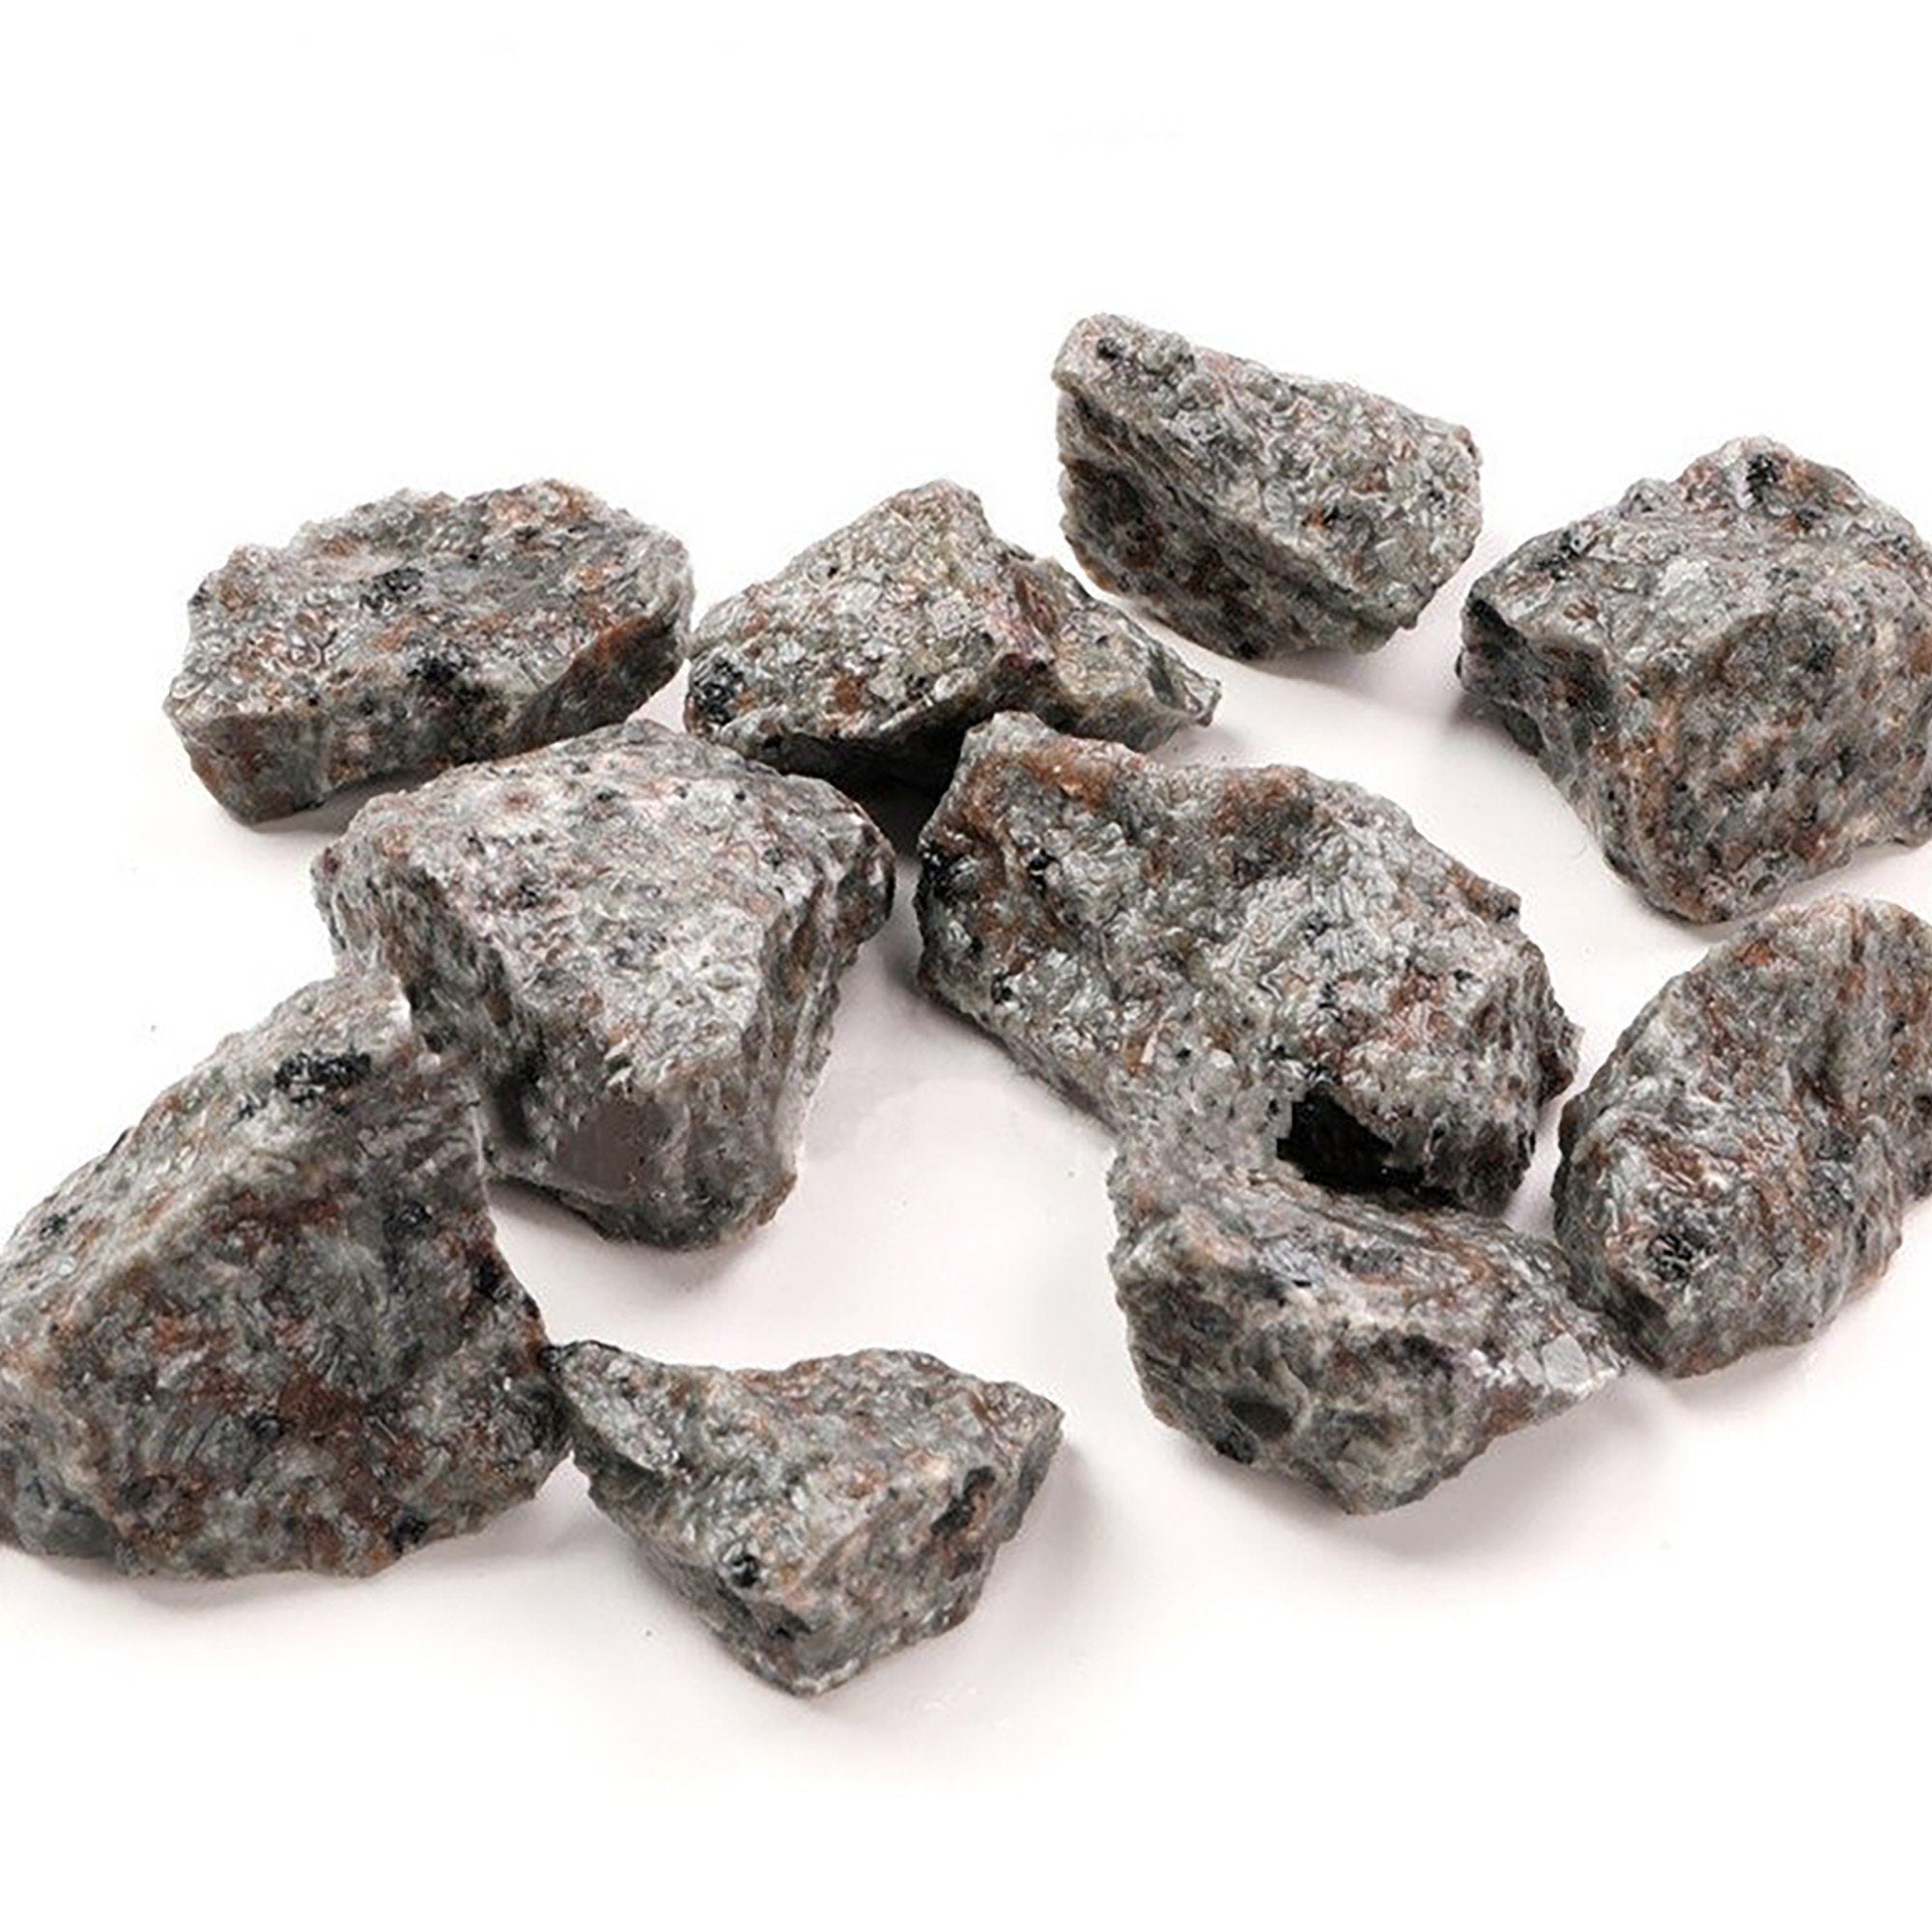 100g/3.5oz Magic Stones, Syenite-rich Fluorescent Sodalite, Hornblende, Yooper/Ember Rock, Ideal for Meditation or Home Decor